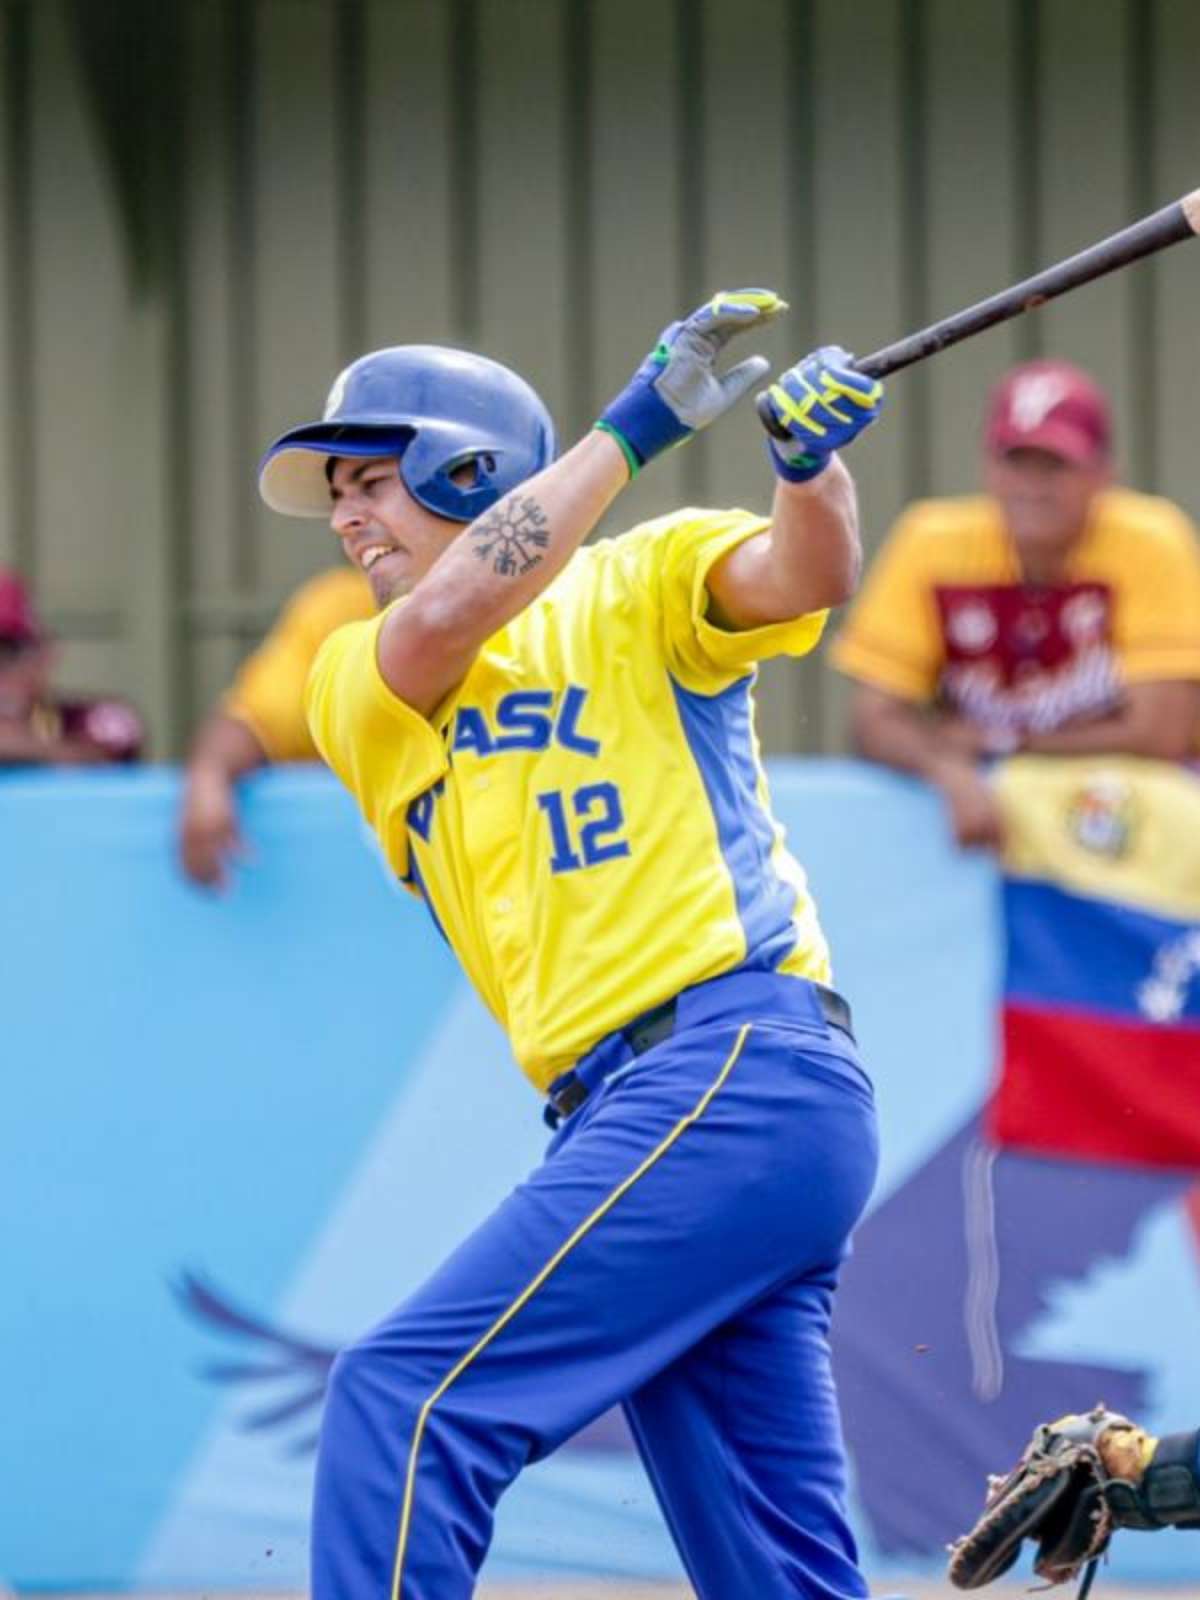 Beisebol: latinos continuam sendo fundamentais para o passatempo